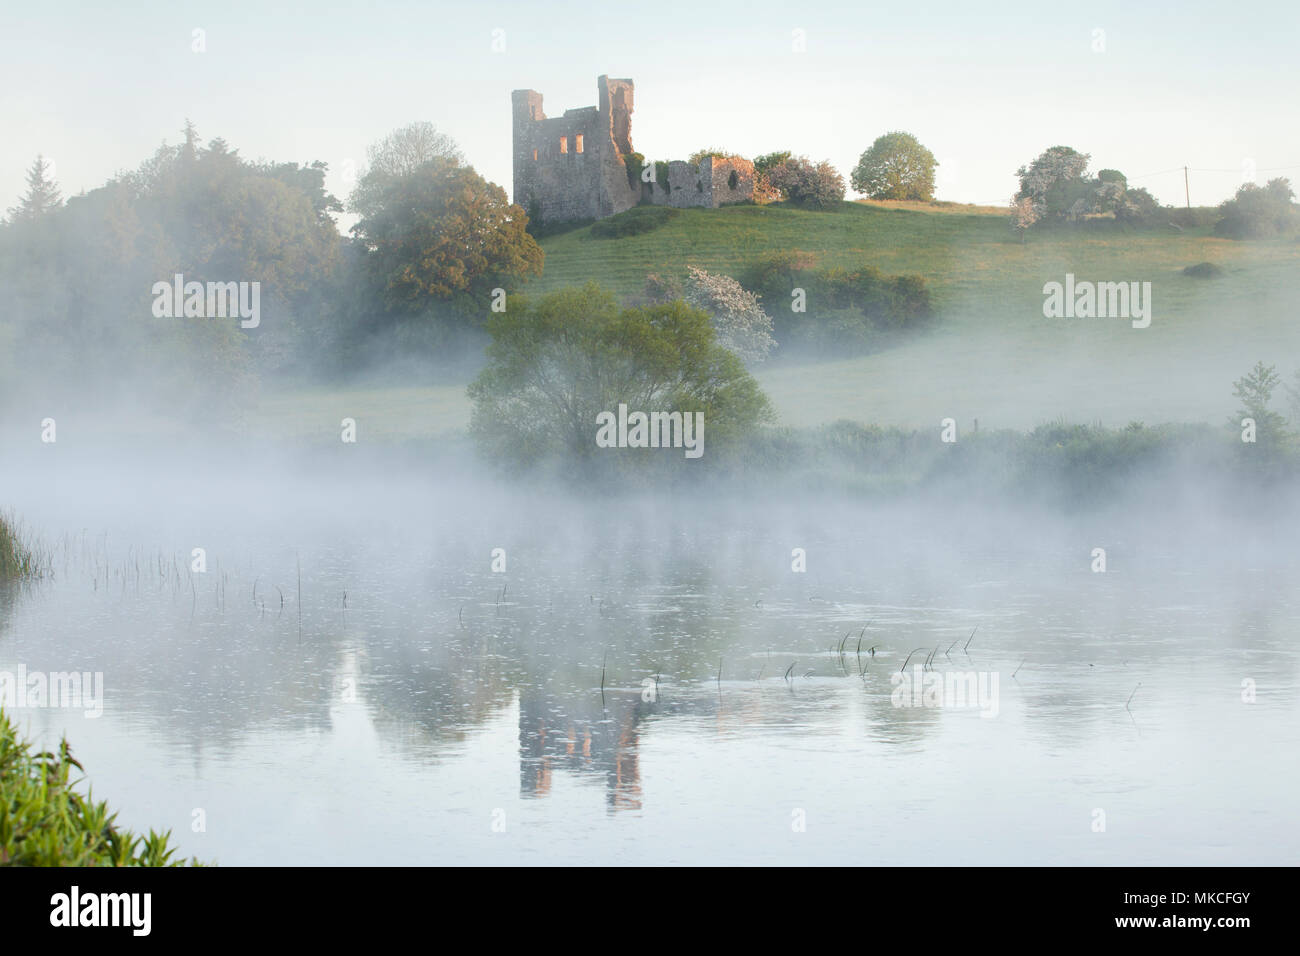 La brume enveloppe Dunmoe château, sur les rives de la Boyne, comté de Meath Irlande Banque D'Images